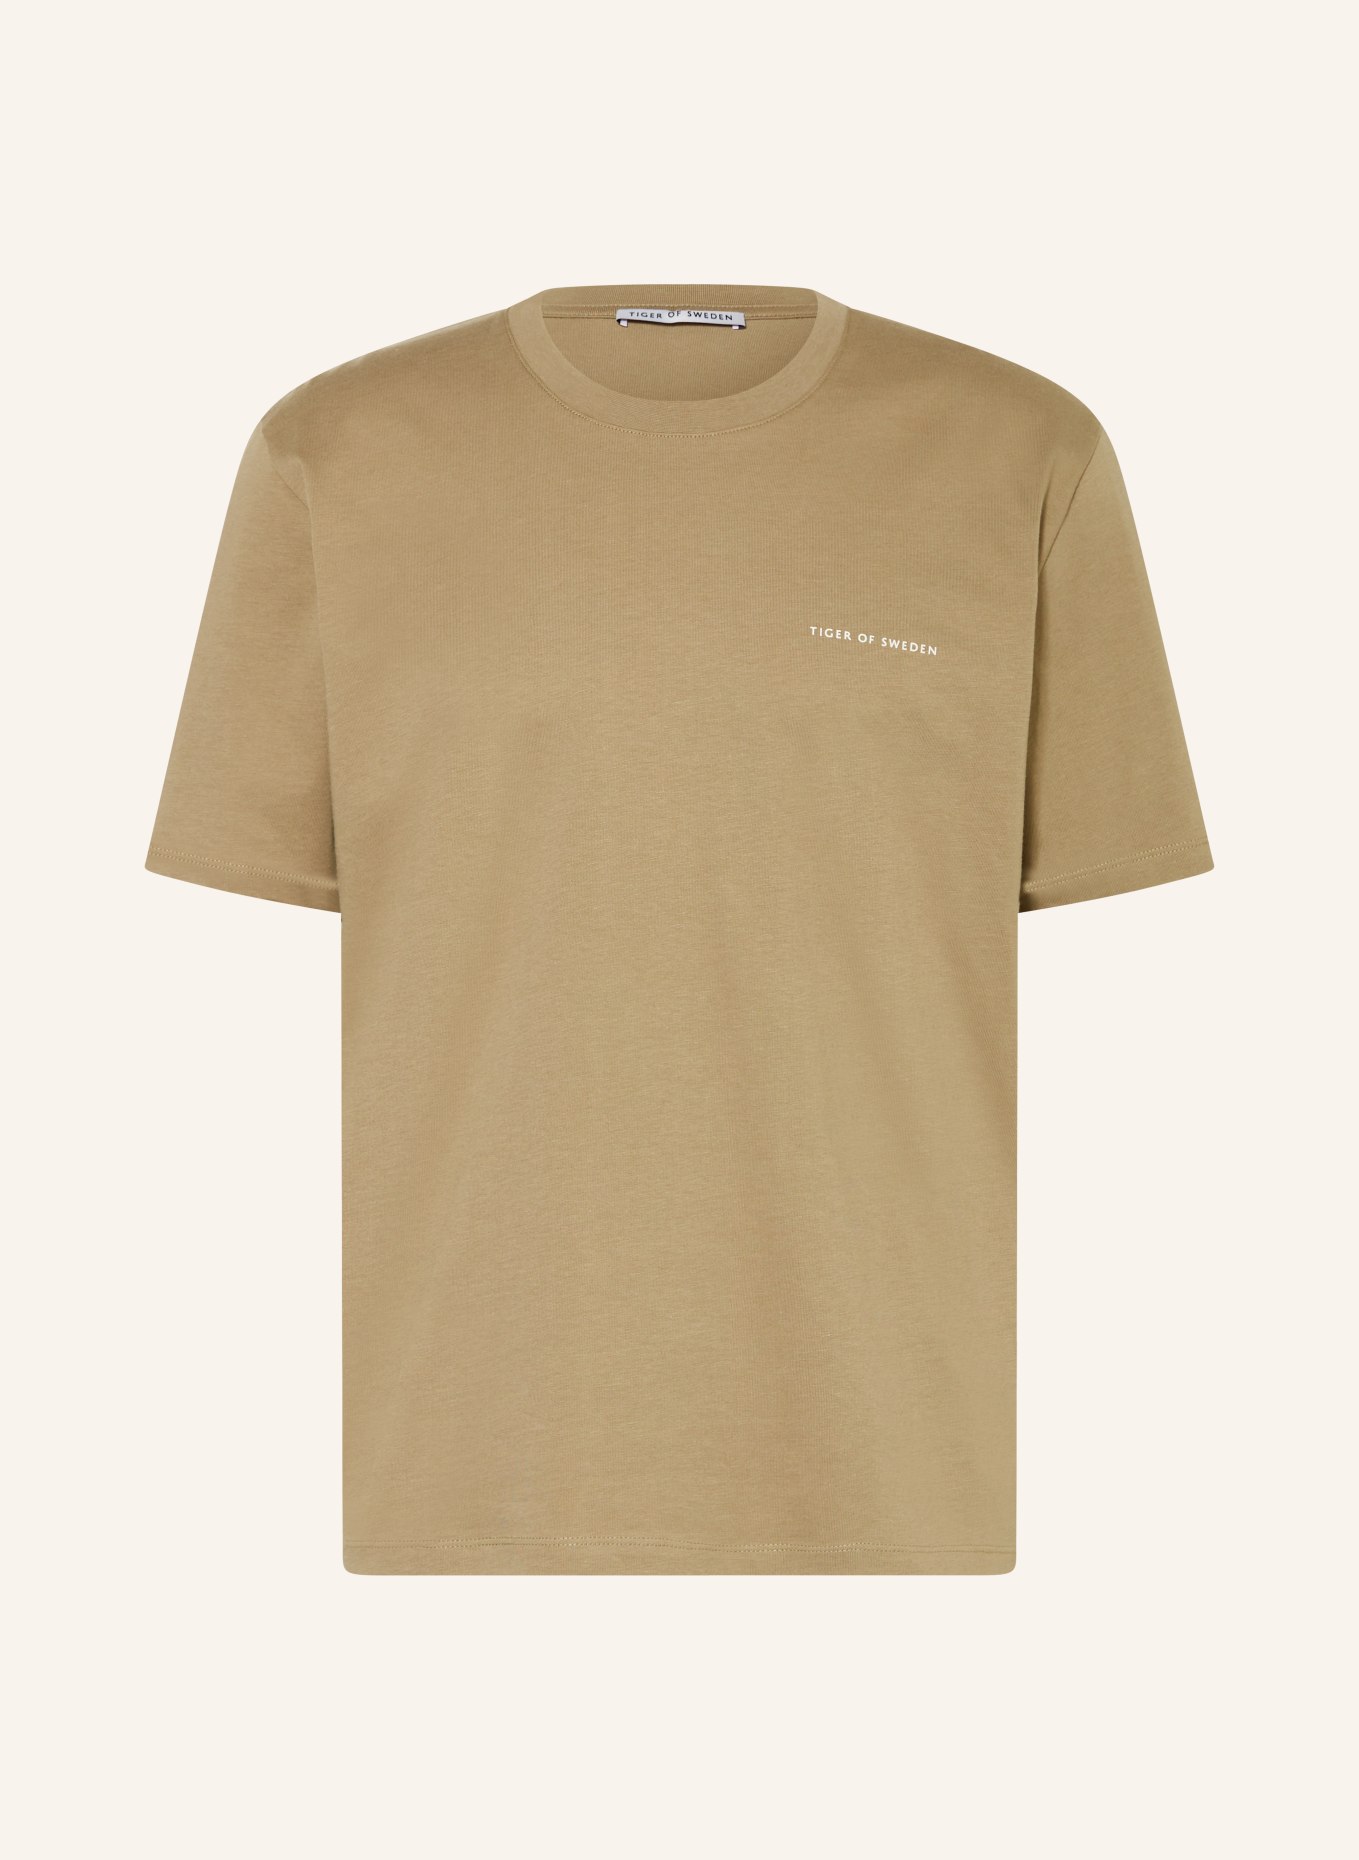 TIGER OF SWEDEN T-shirt PRO, Color: OLIVE (Image 1)